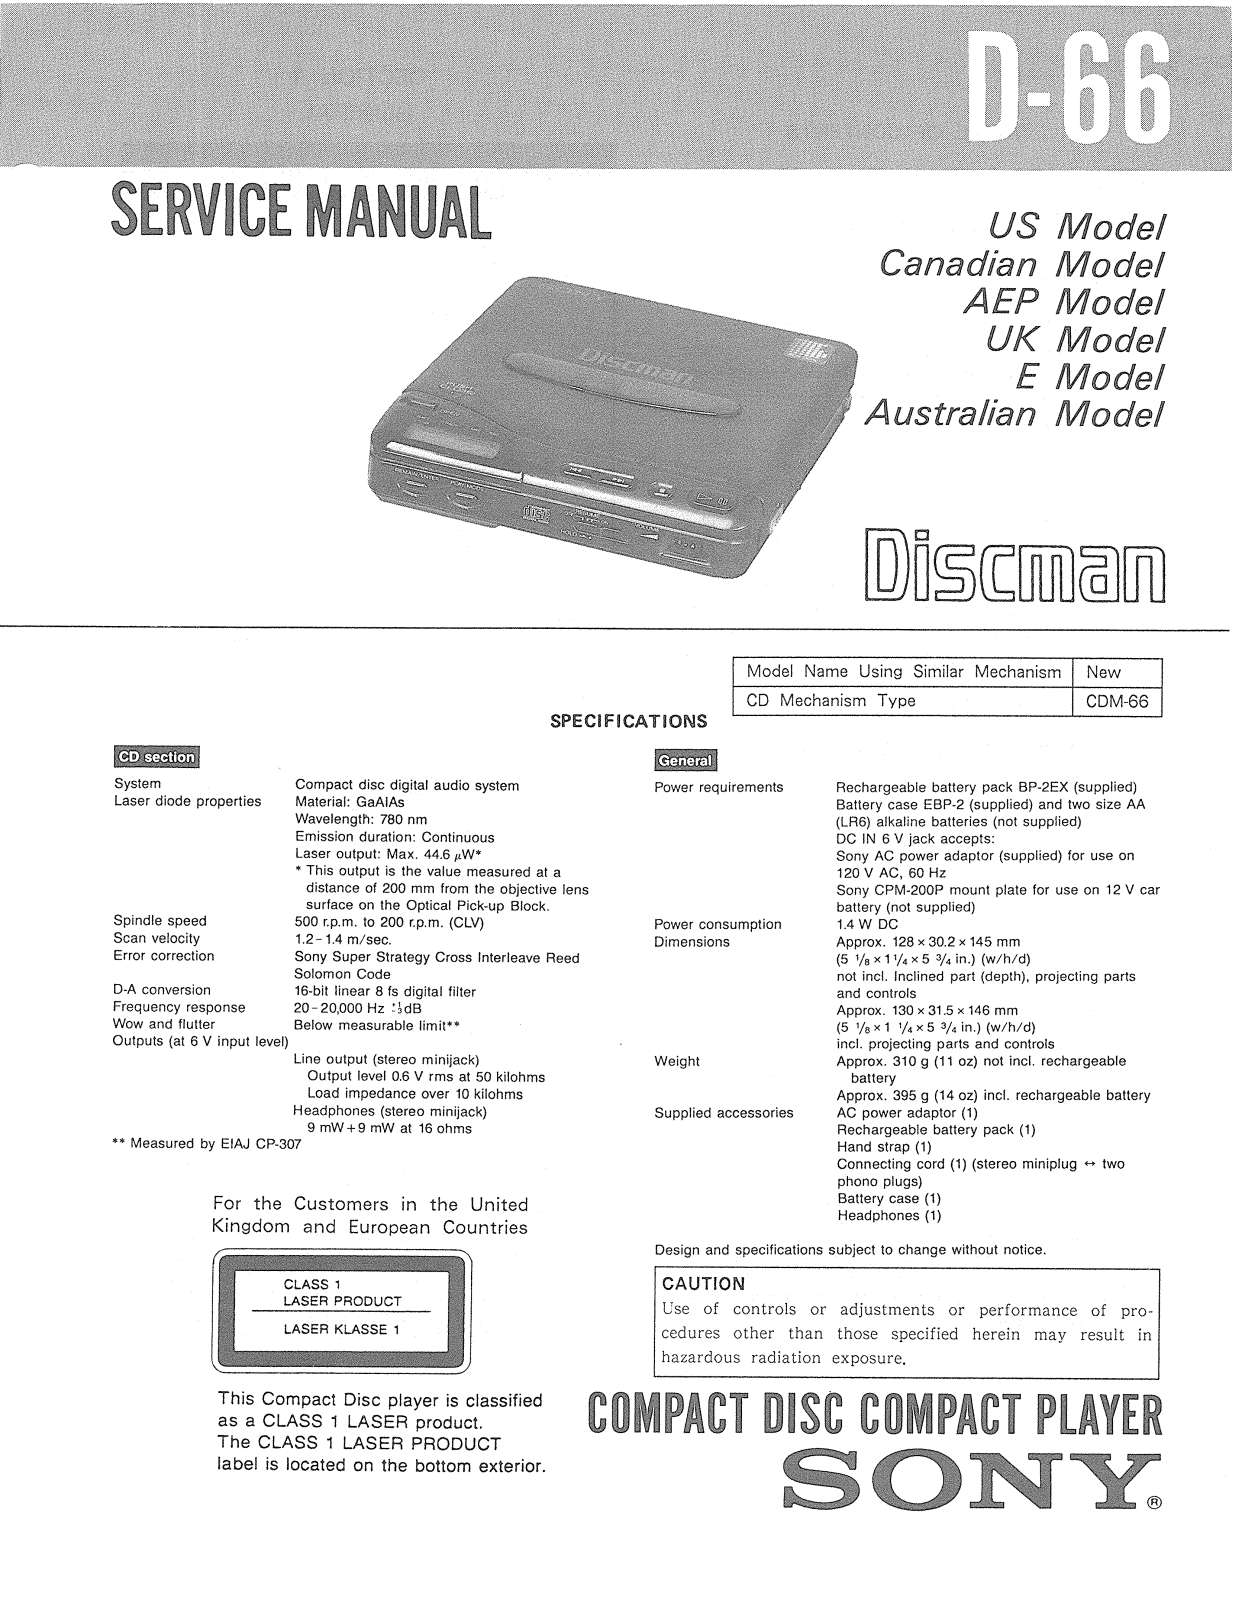 Sony D-66 Service manual